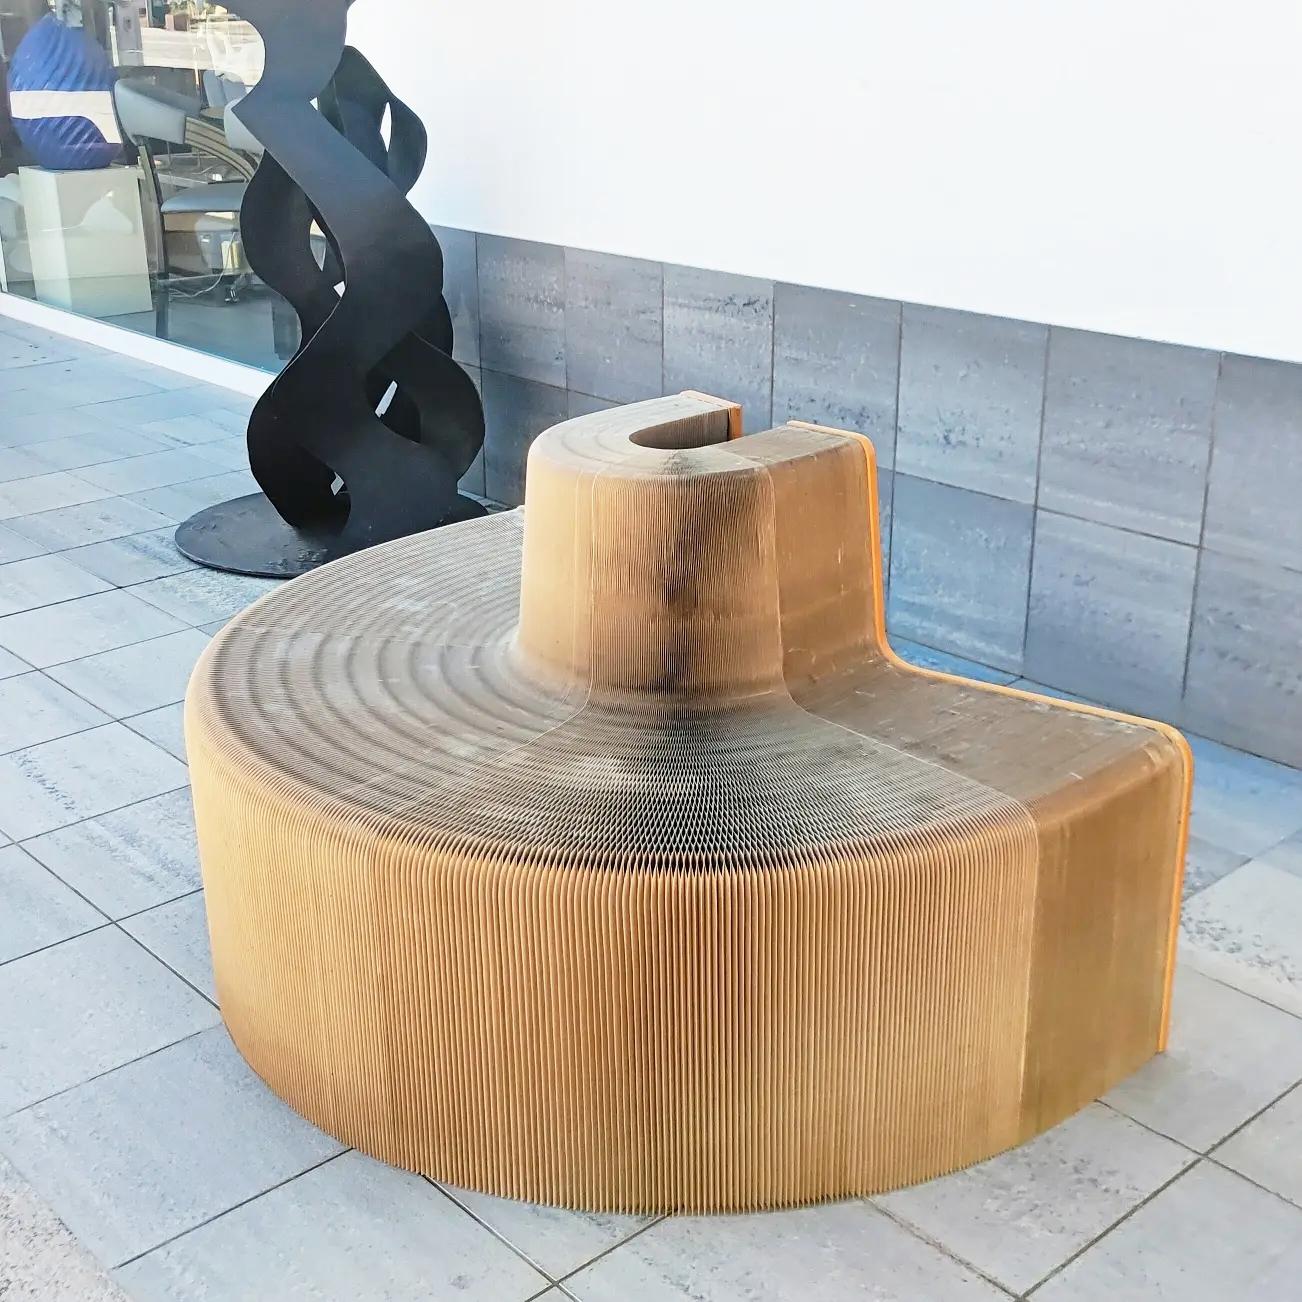 Sehr seltener Chishen Chiu ausziehbarer Sessel Flexible Love hergestellt in den frühen 2000er Jahren.
Bei diesem Projekt geht es vor allem um die Gemeinschaft und den Austausch sozialer Interaktionen.
Das von der taiwanesischen Künstlerin Chishen